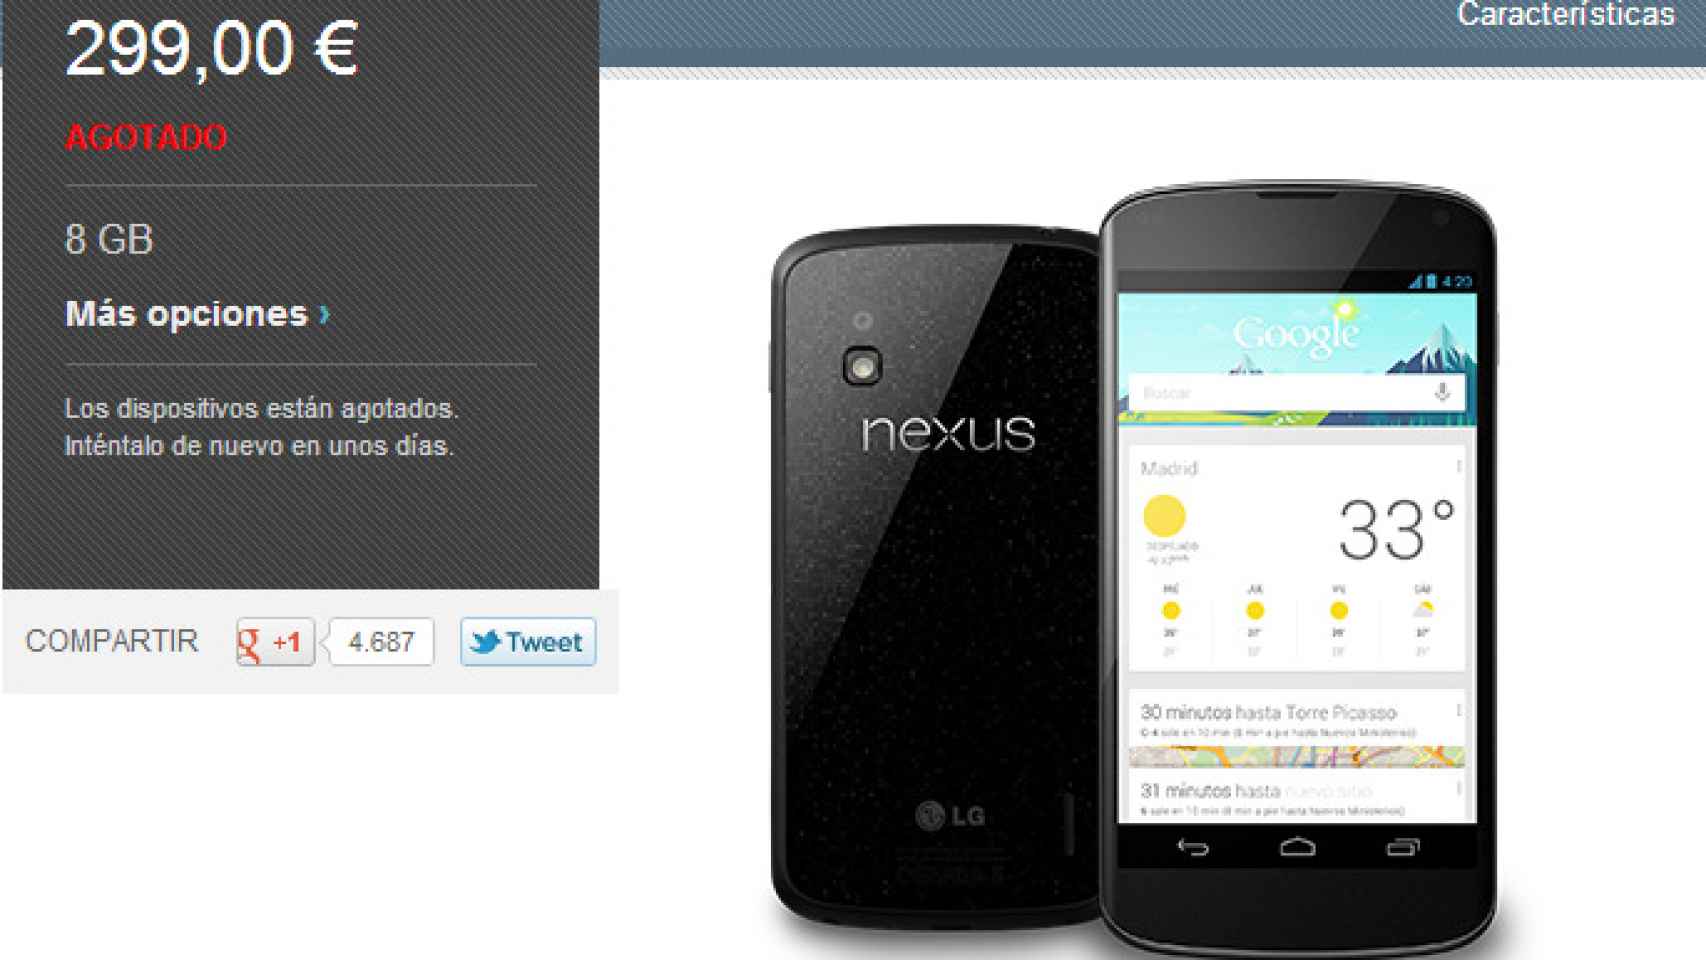 Google da explicaciones sobre la venta del Nexus 4 y la culpa le cae a LG